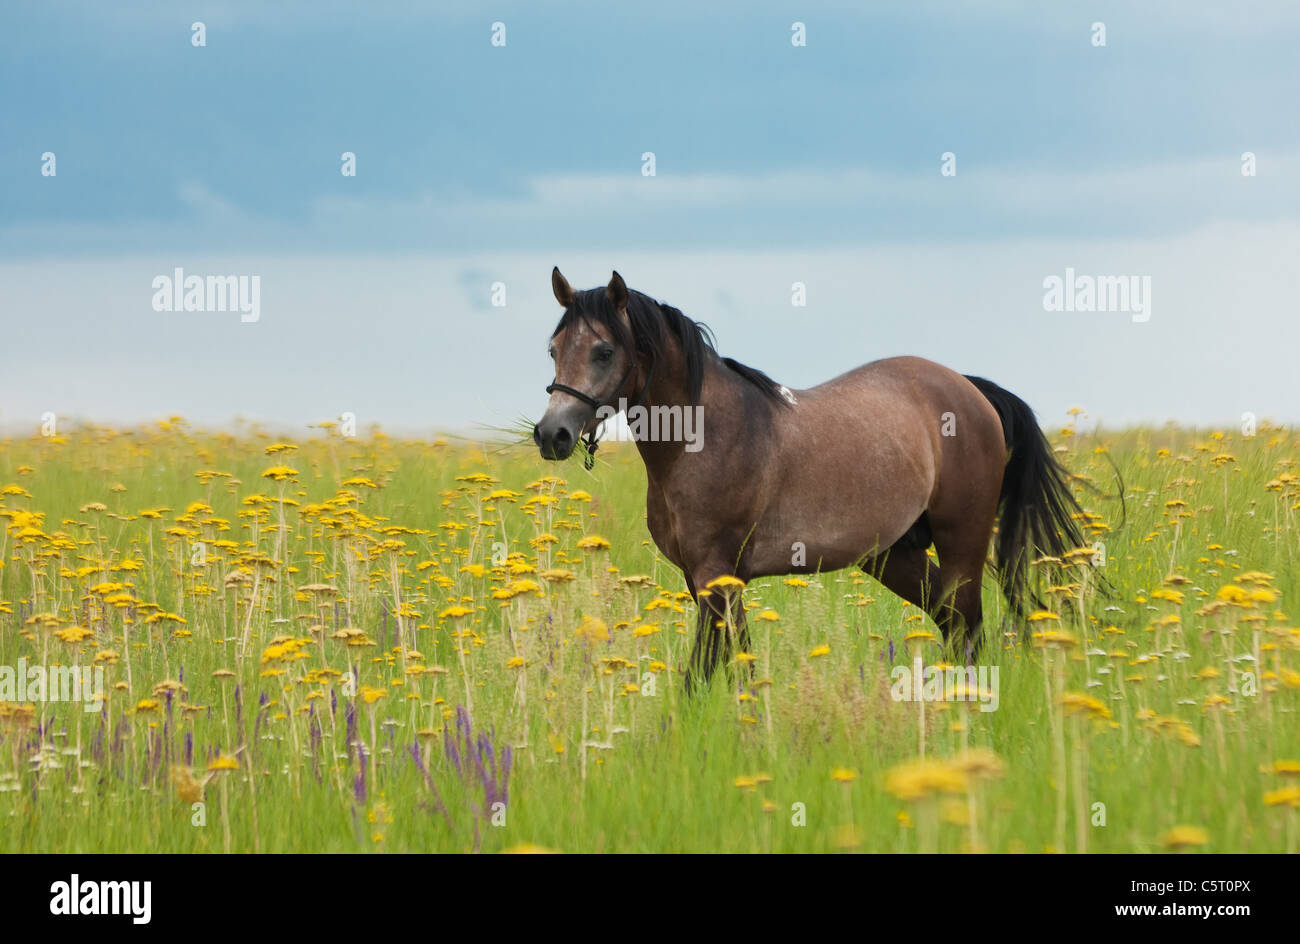 Mangiare a cavallo di un verde erba del campo Foto Stock